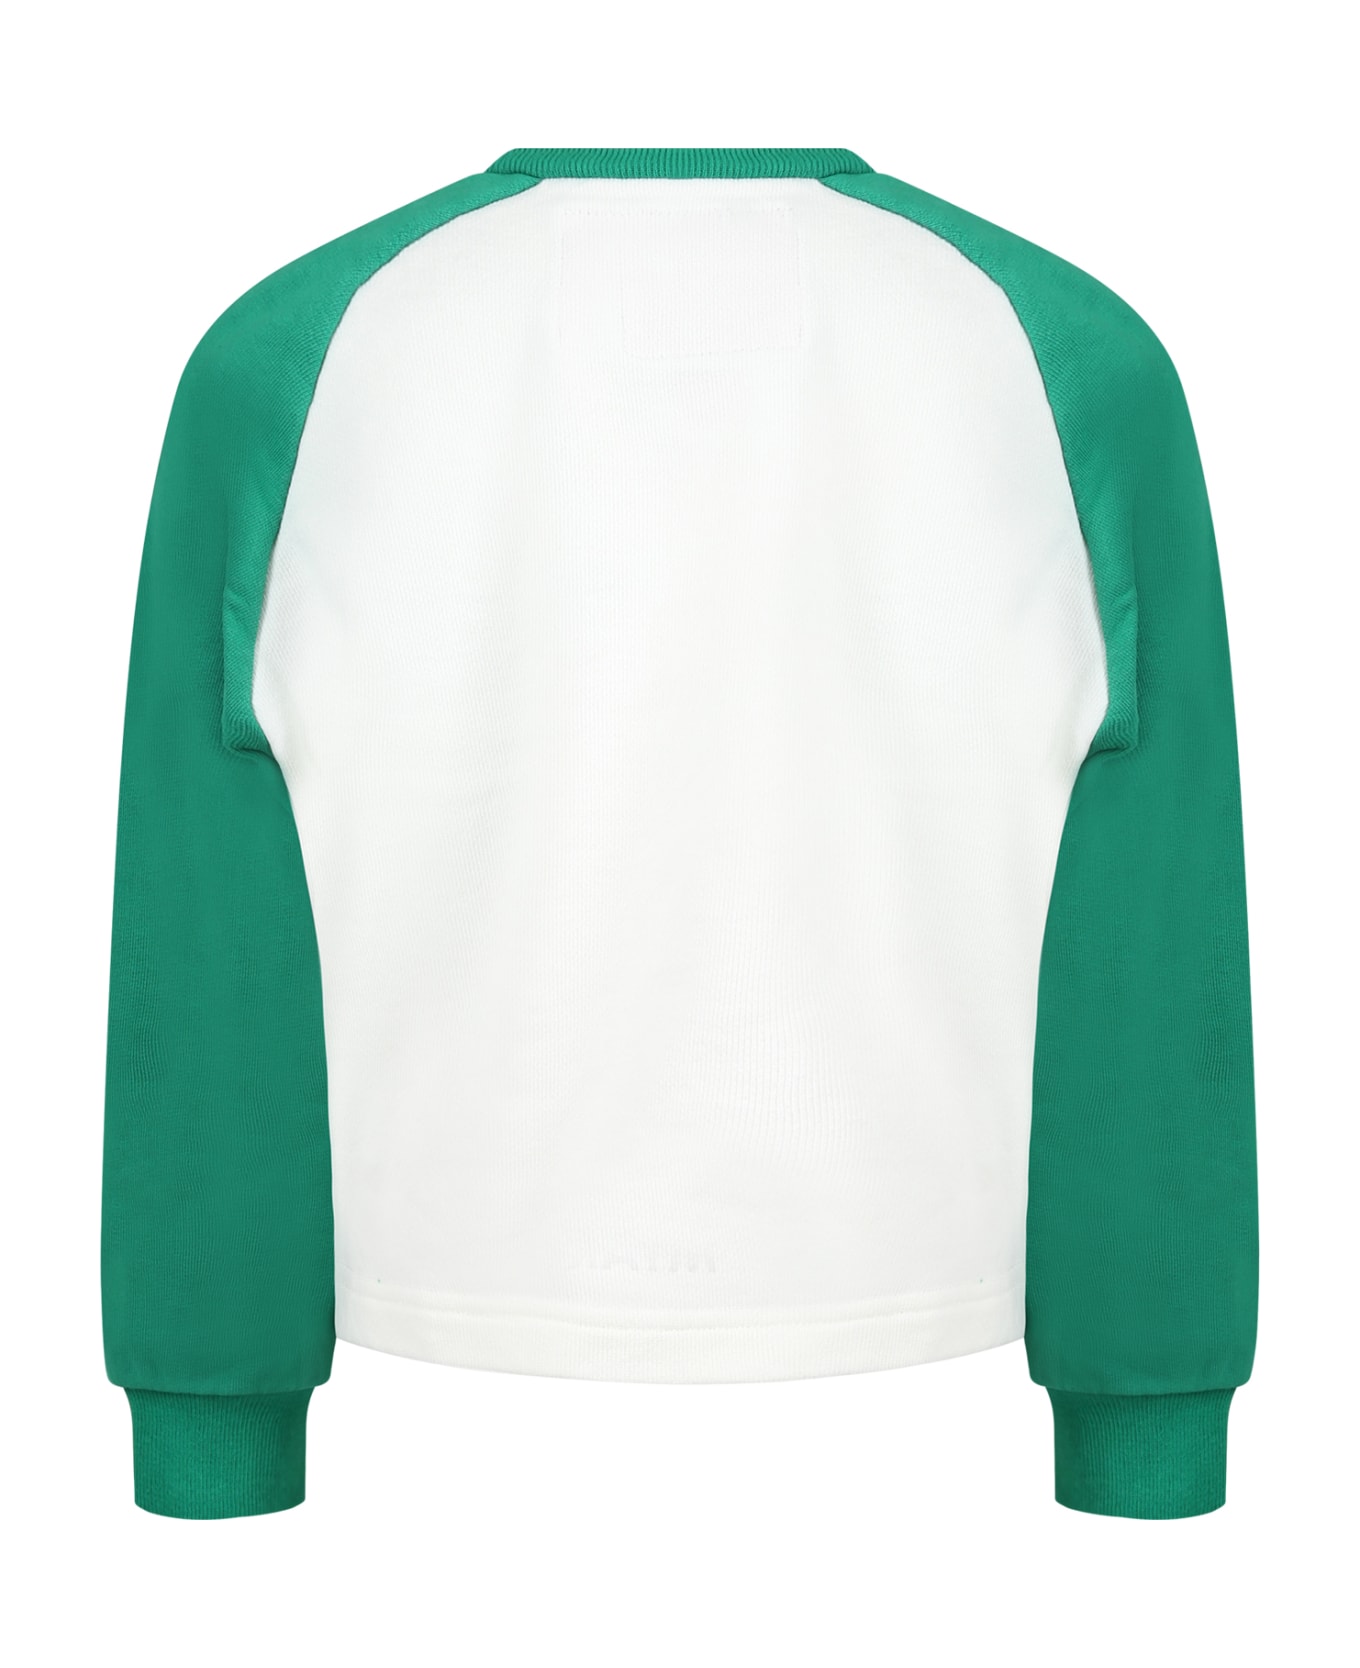 MYAR Sweat-shirt Multicolore Pour Garçon Avec Imprimé Et Logo - Multicolor